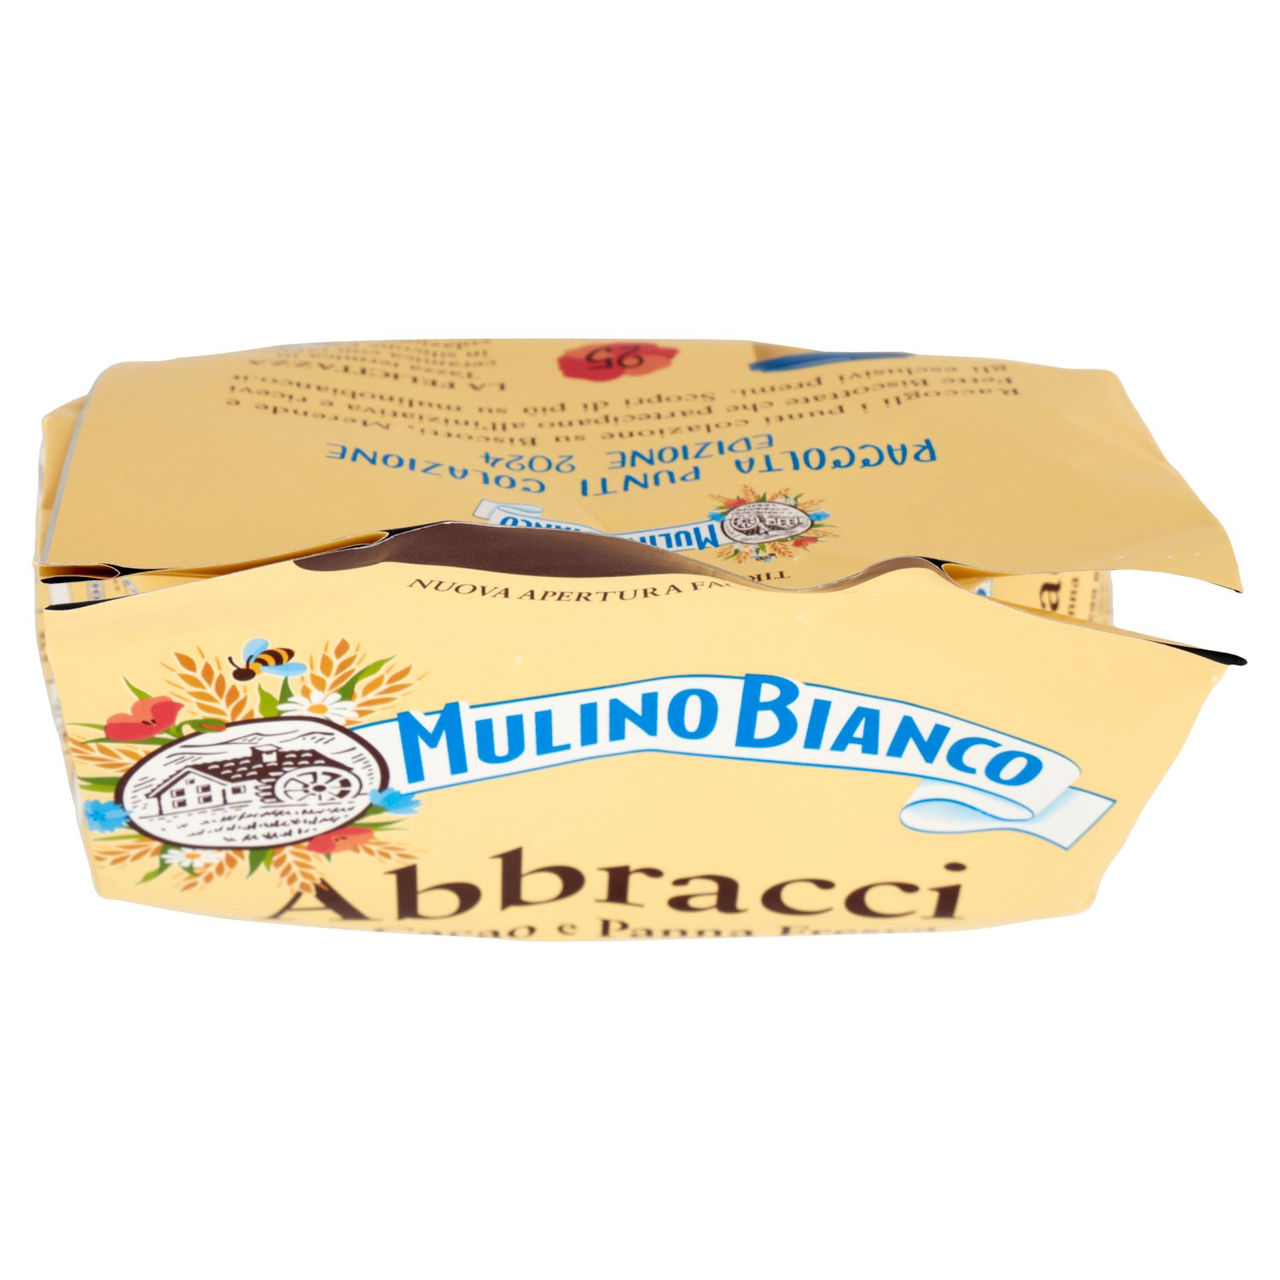 Mulino Bianco Biscotti Abbracci in vendita online